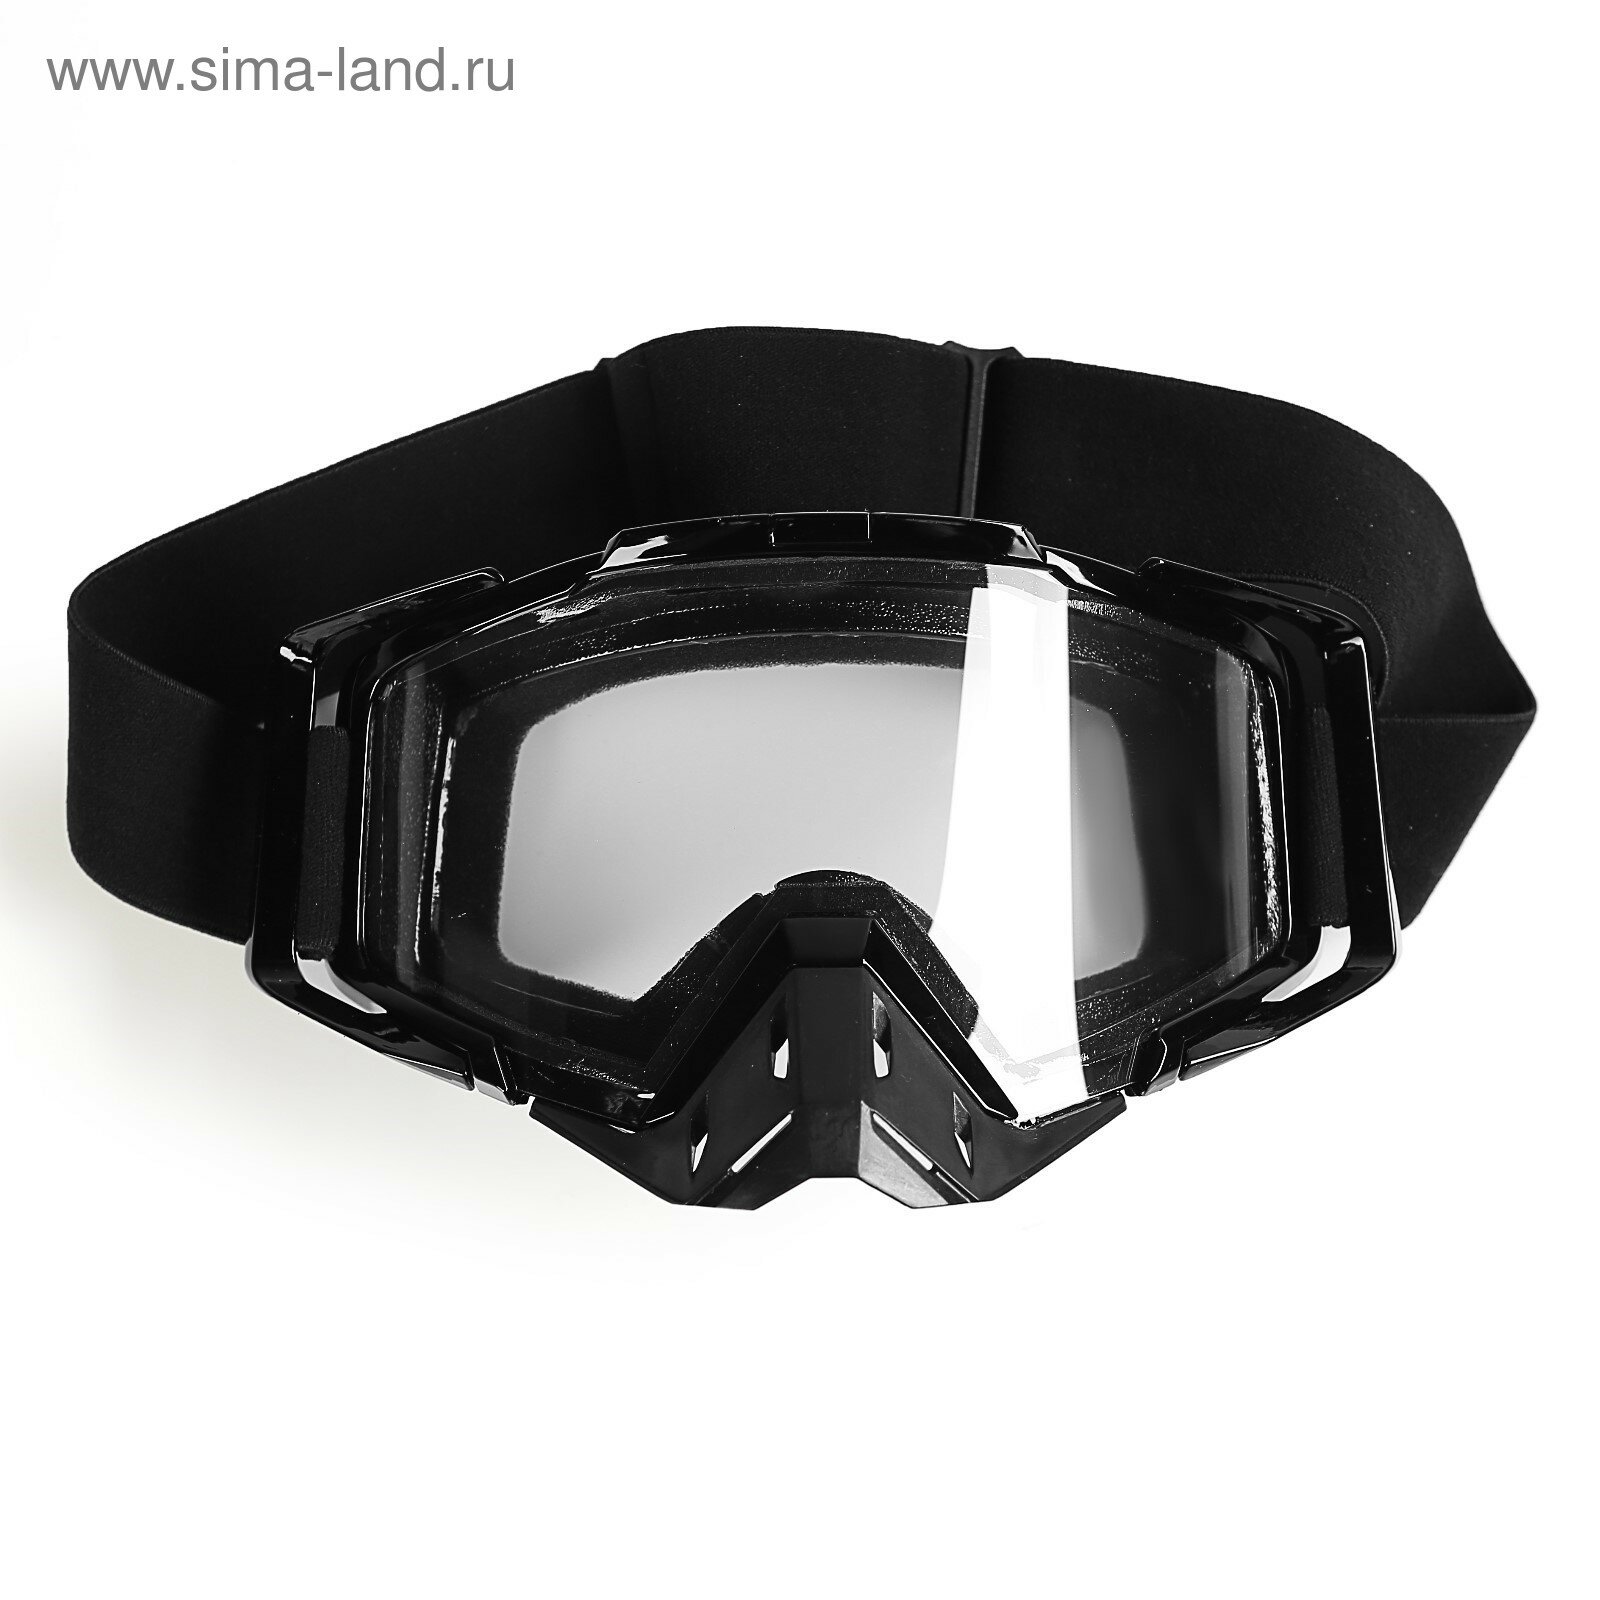 Очки-маска со съемной защитой носа стекло прозрачное черные (1шт.)